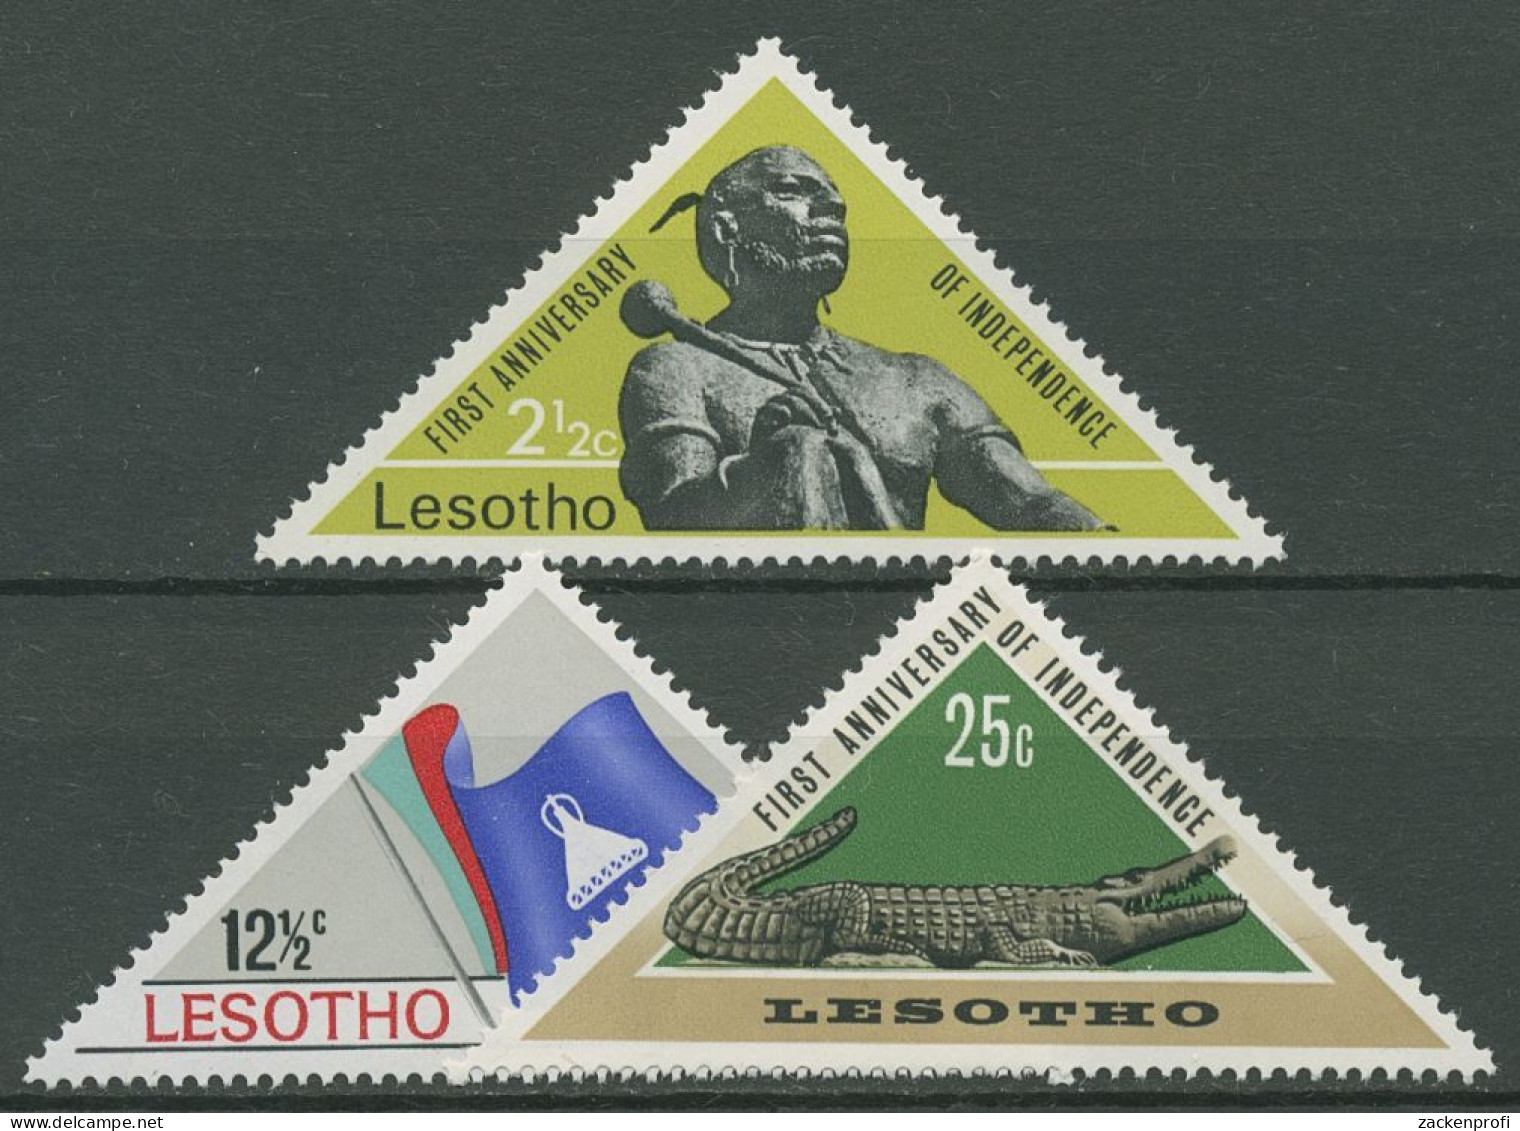 Lesotho 1967 1 Jahr Unabhängigkeit Flagge Nilkrokodil 41/43 Postfrisch - Lesotho (1966-...)